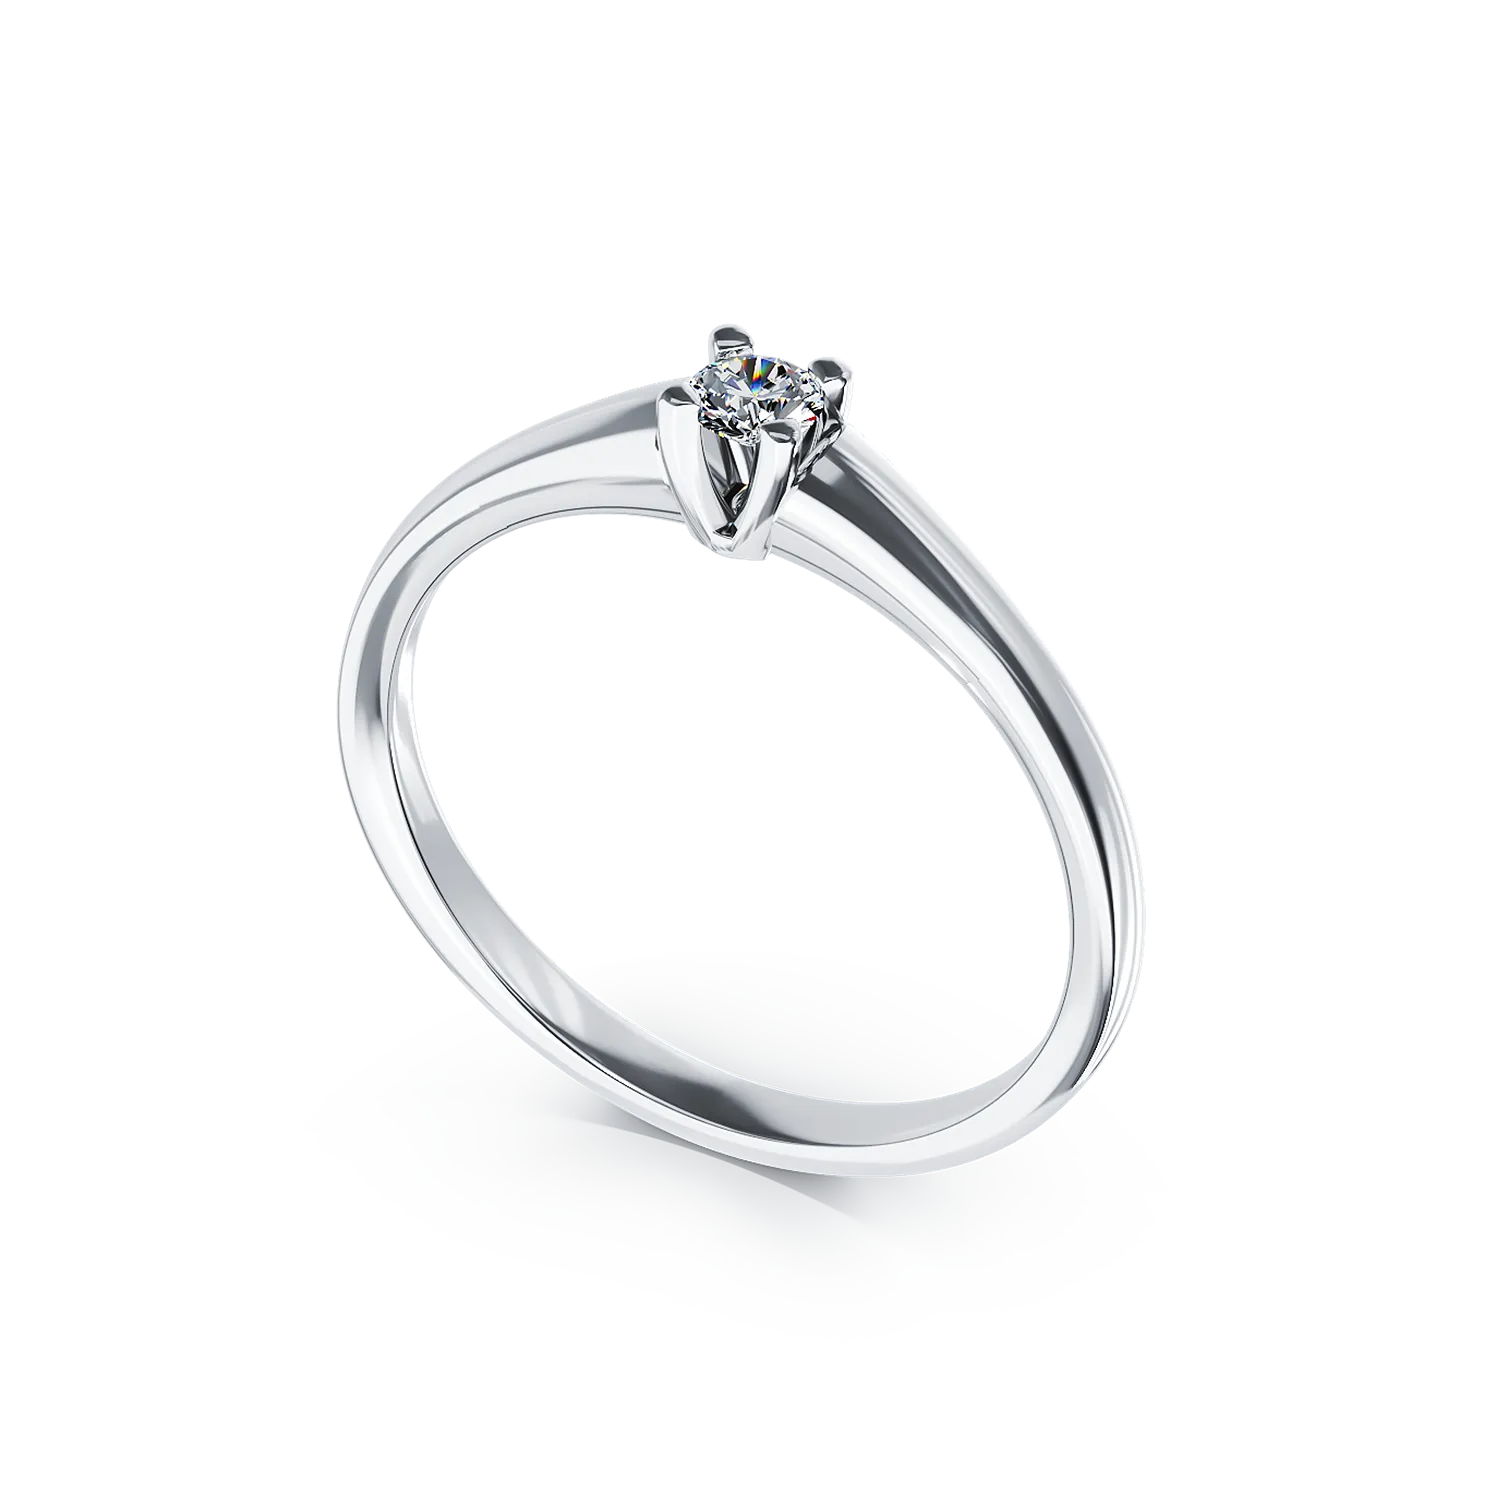 Inel de logodna din aur alb de 18K cu un diamant solitaire de 0.09ct